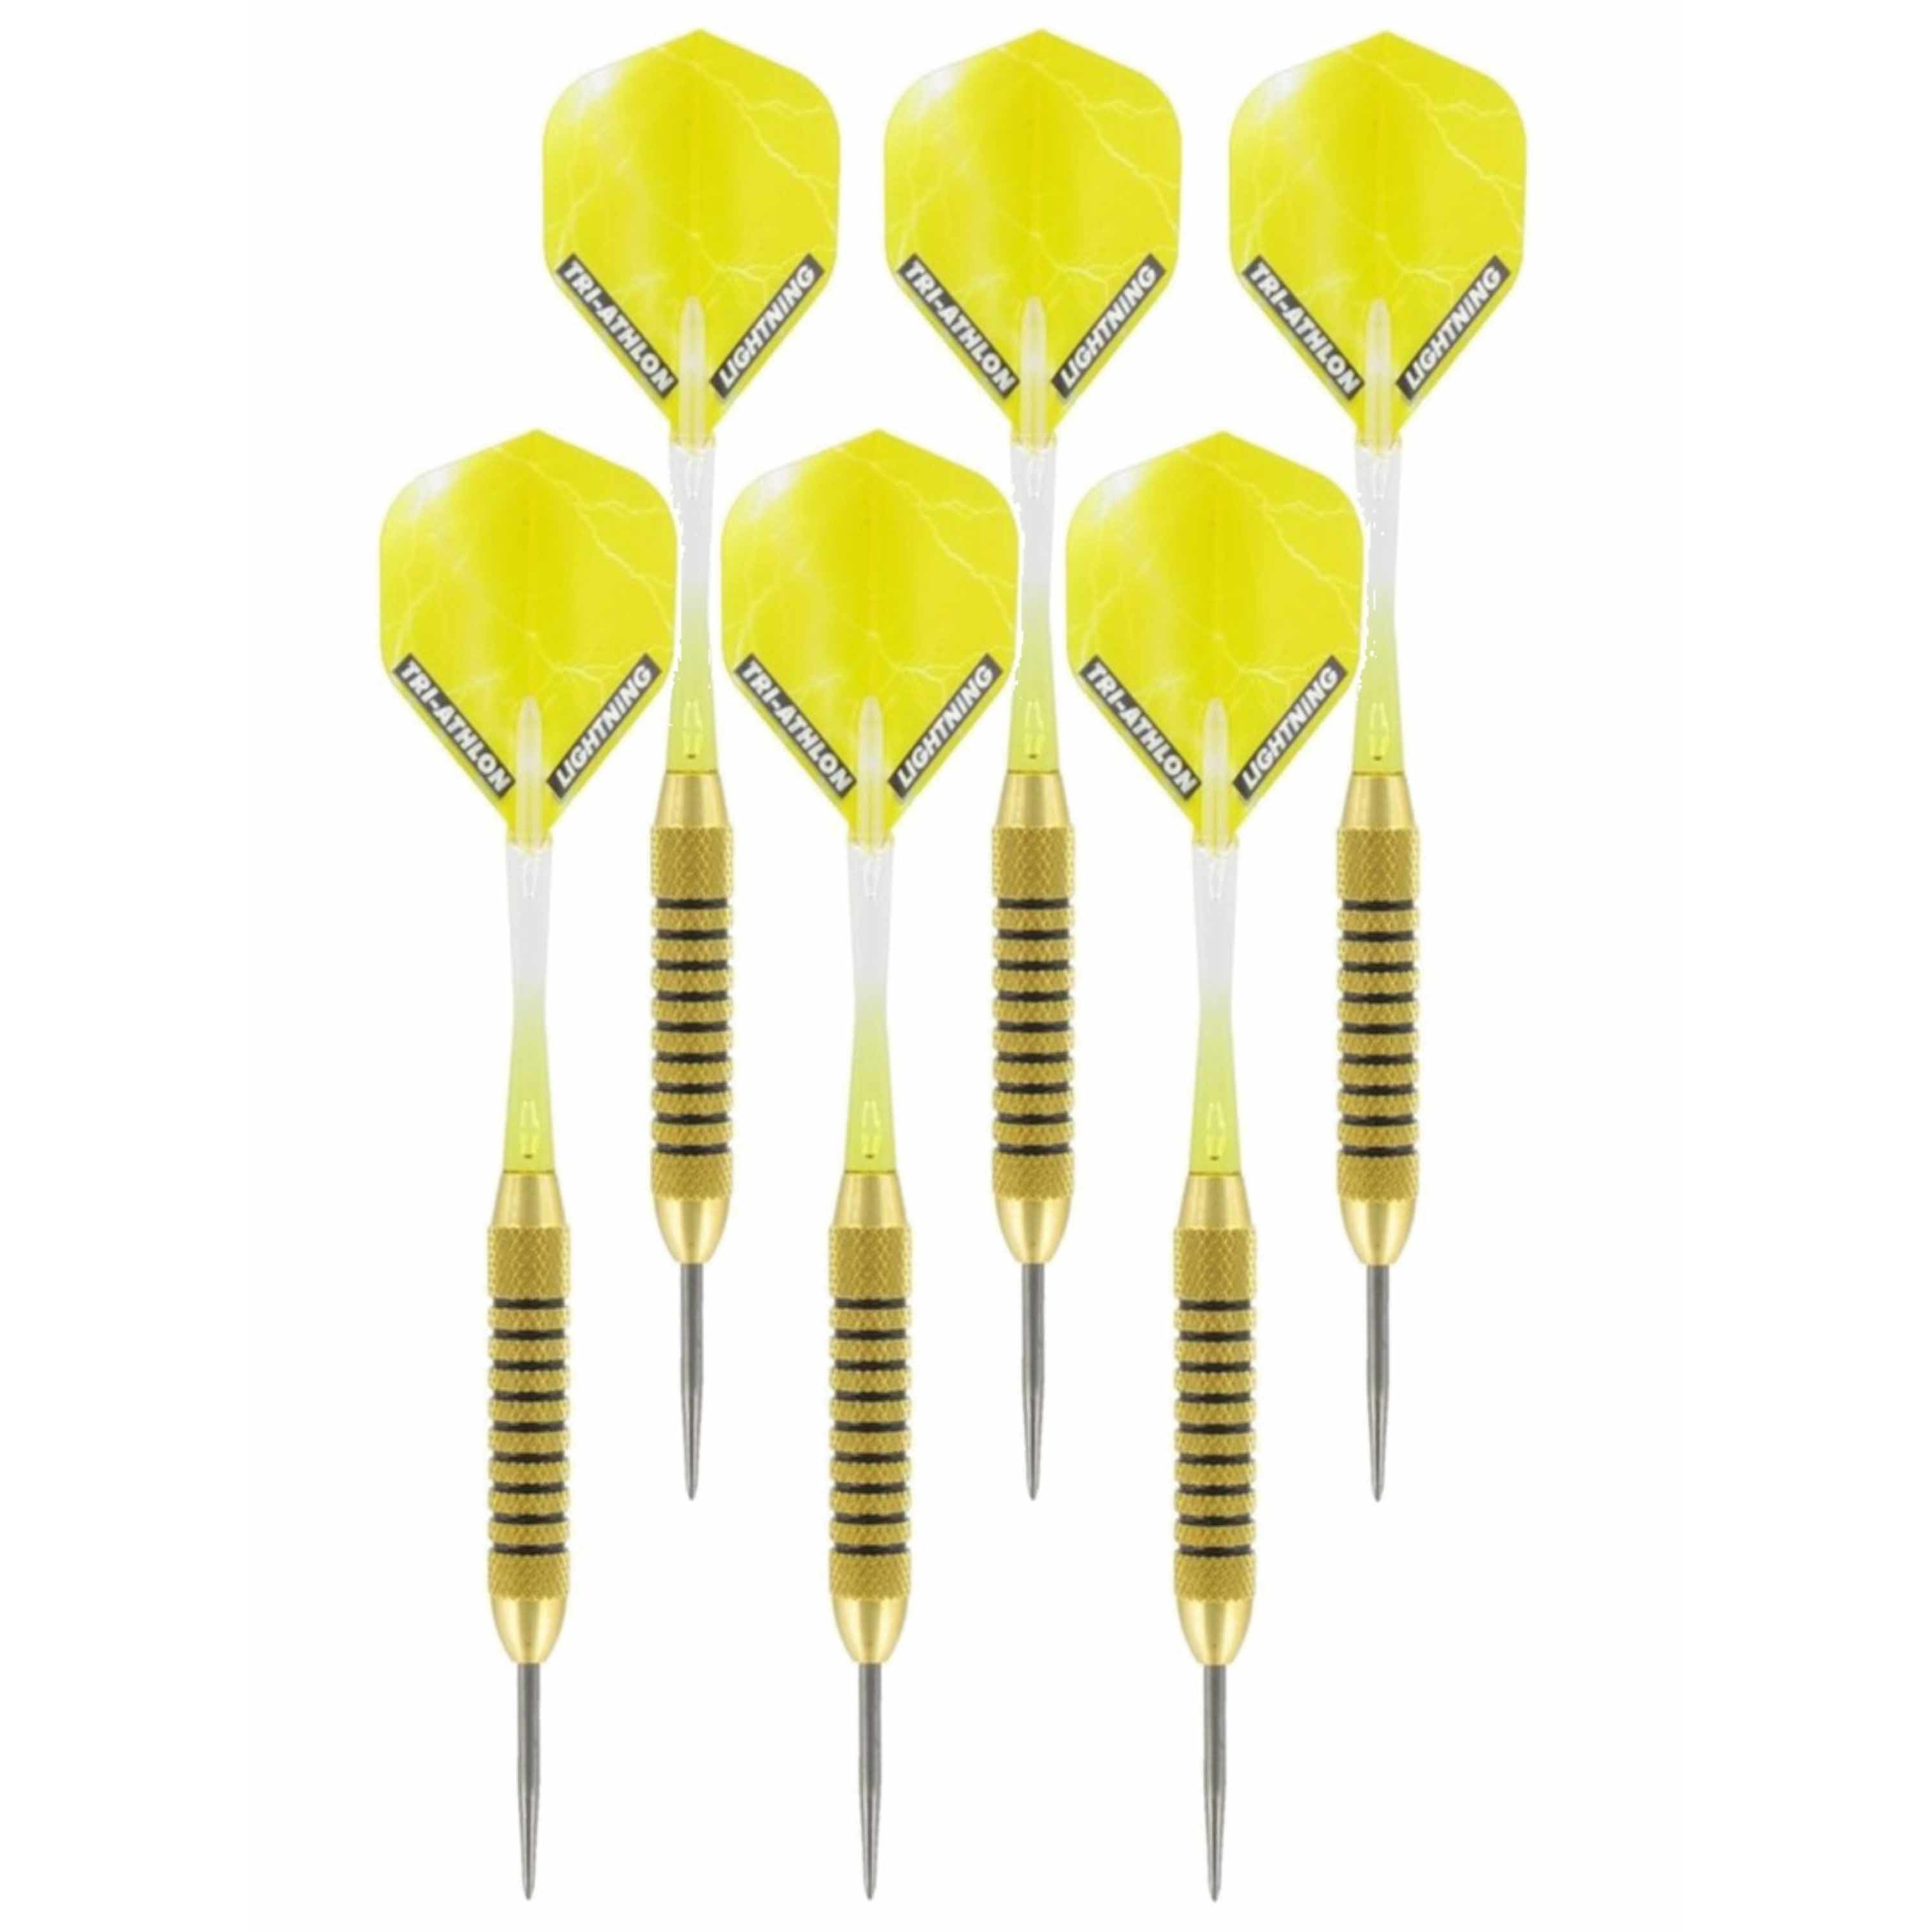 3x Set van dartpijltjes Speedy Yellow Brass met Metallic Lightning flites 21 grams